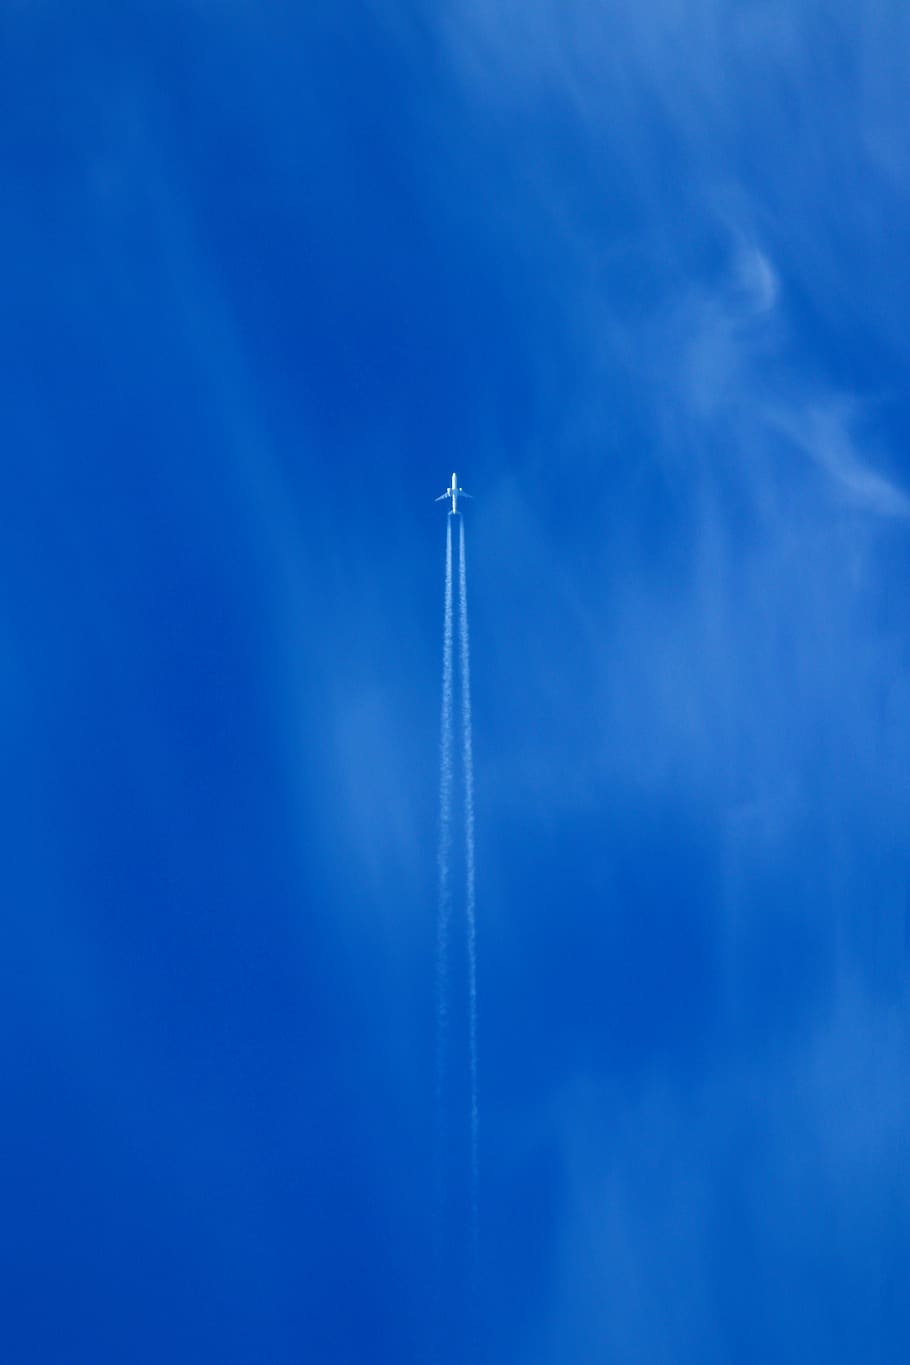 langit biru, mesin jet, jet, pesawat, langit, militer, perjalanan, terbang, awan, pesawat tempur